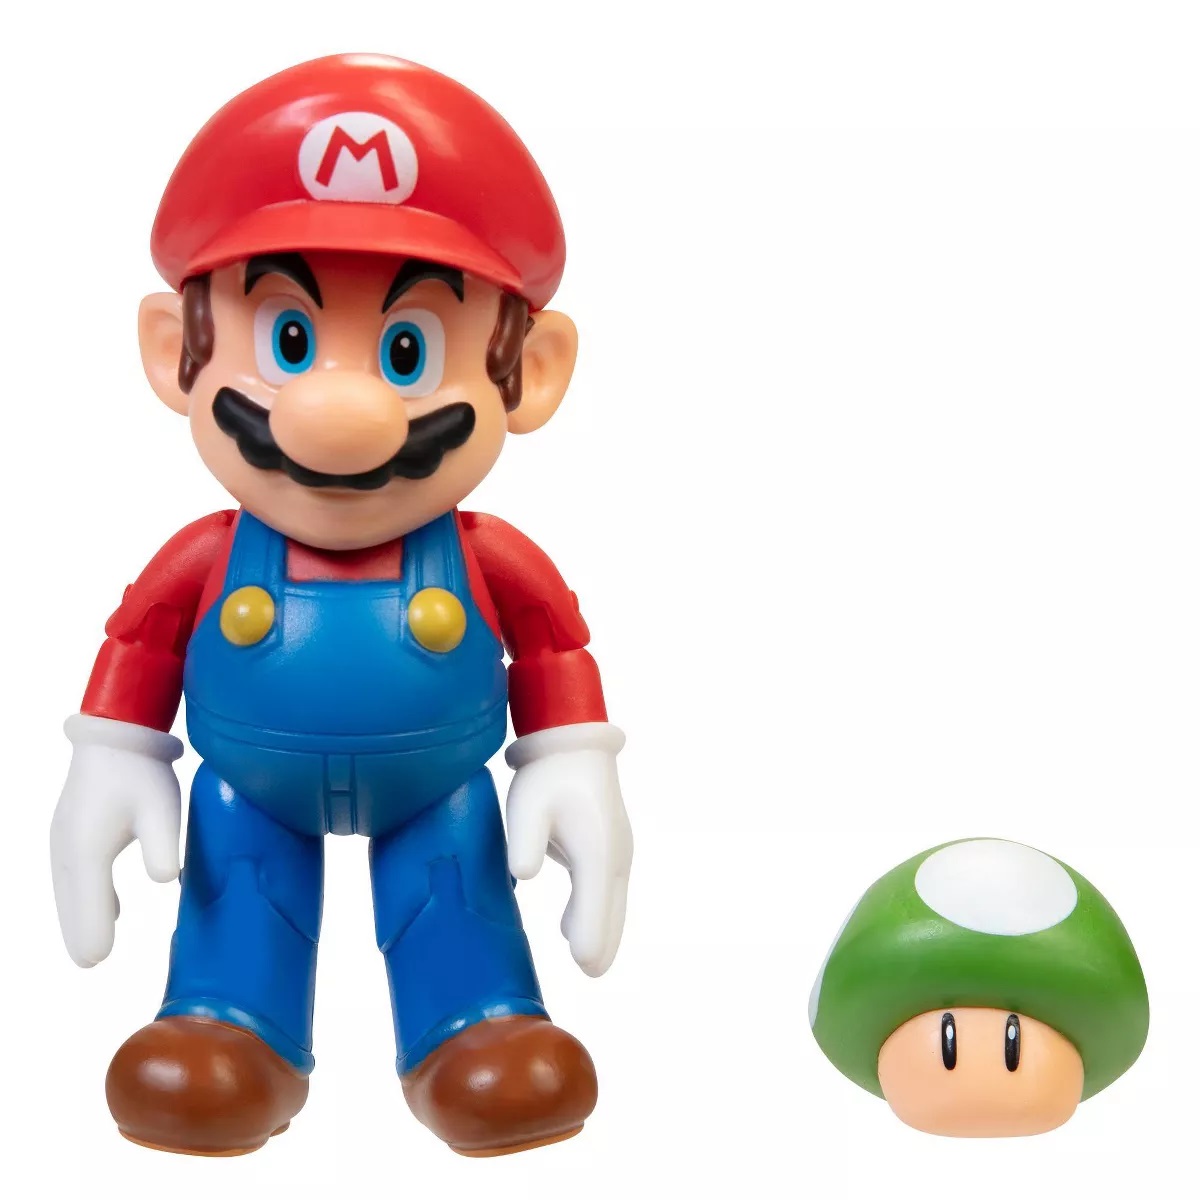 Super Mario: Mario Action Figure